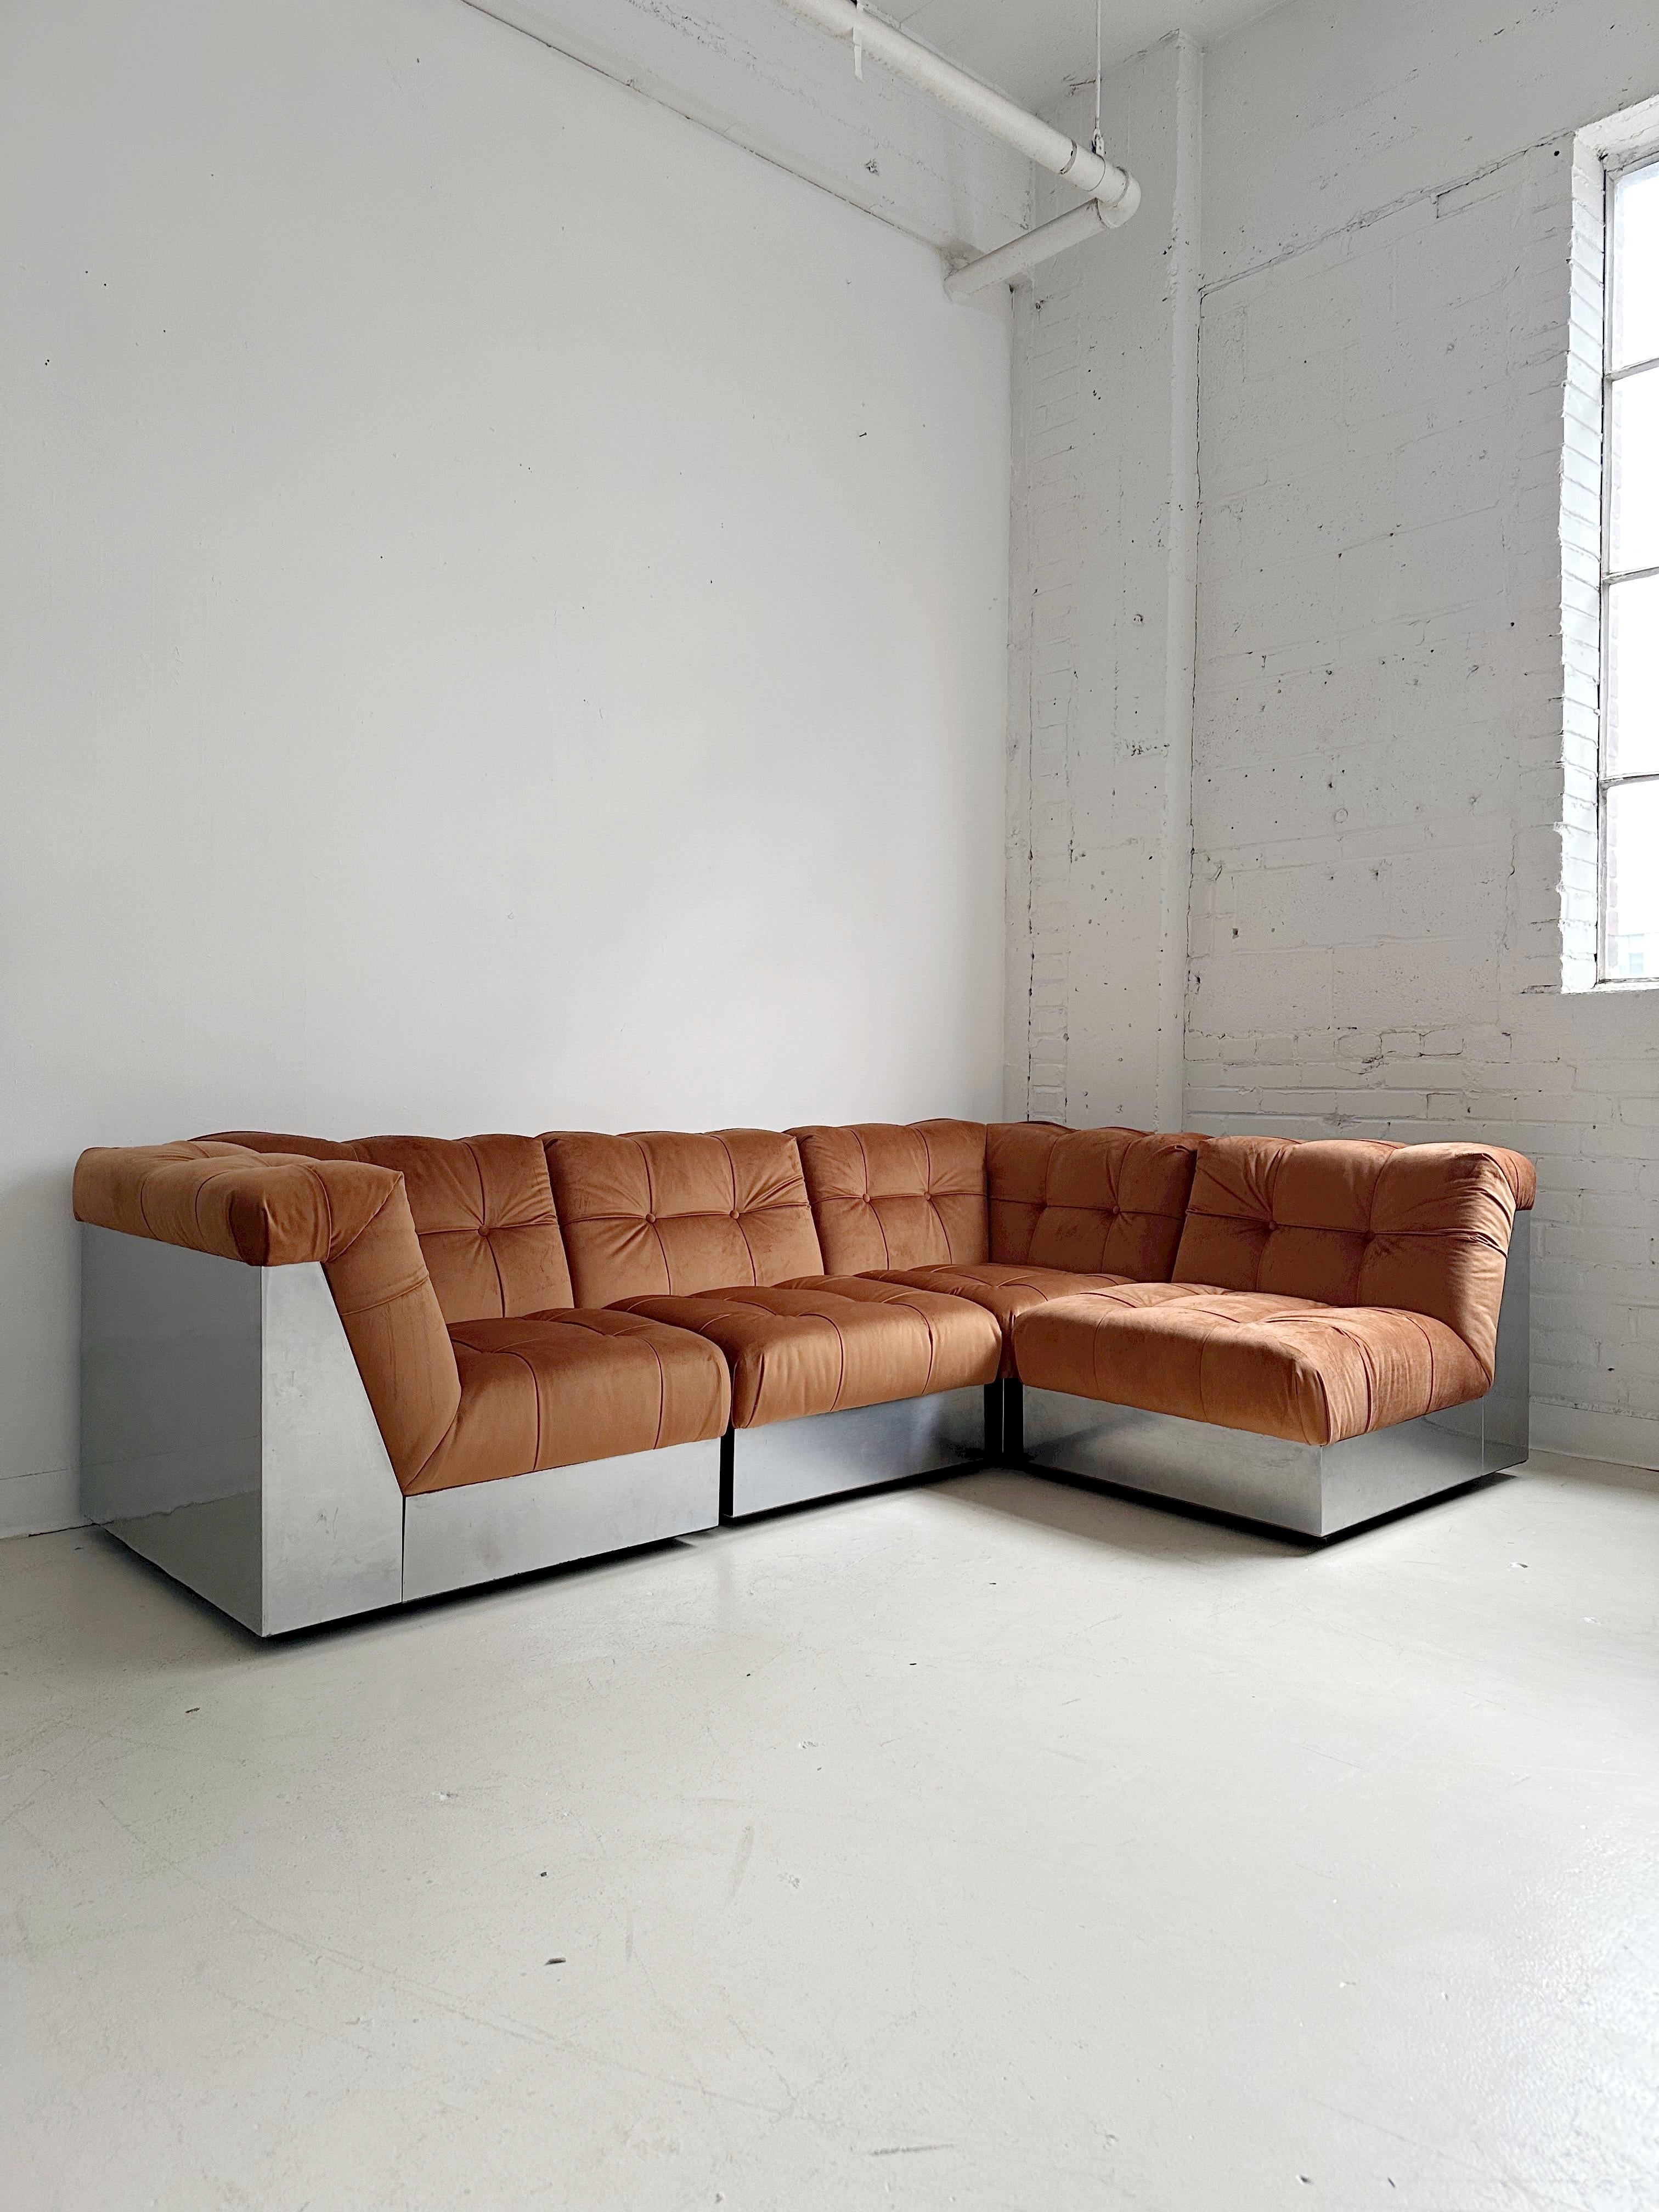 Samt & Stahlgestell 4 Pieces Modulares Sofa att. to Canasta by Giorgio Montani 10